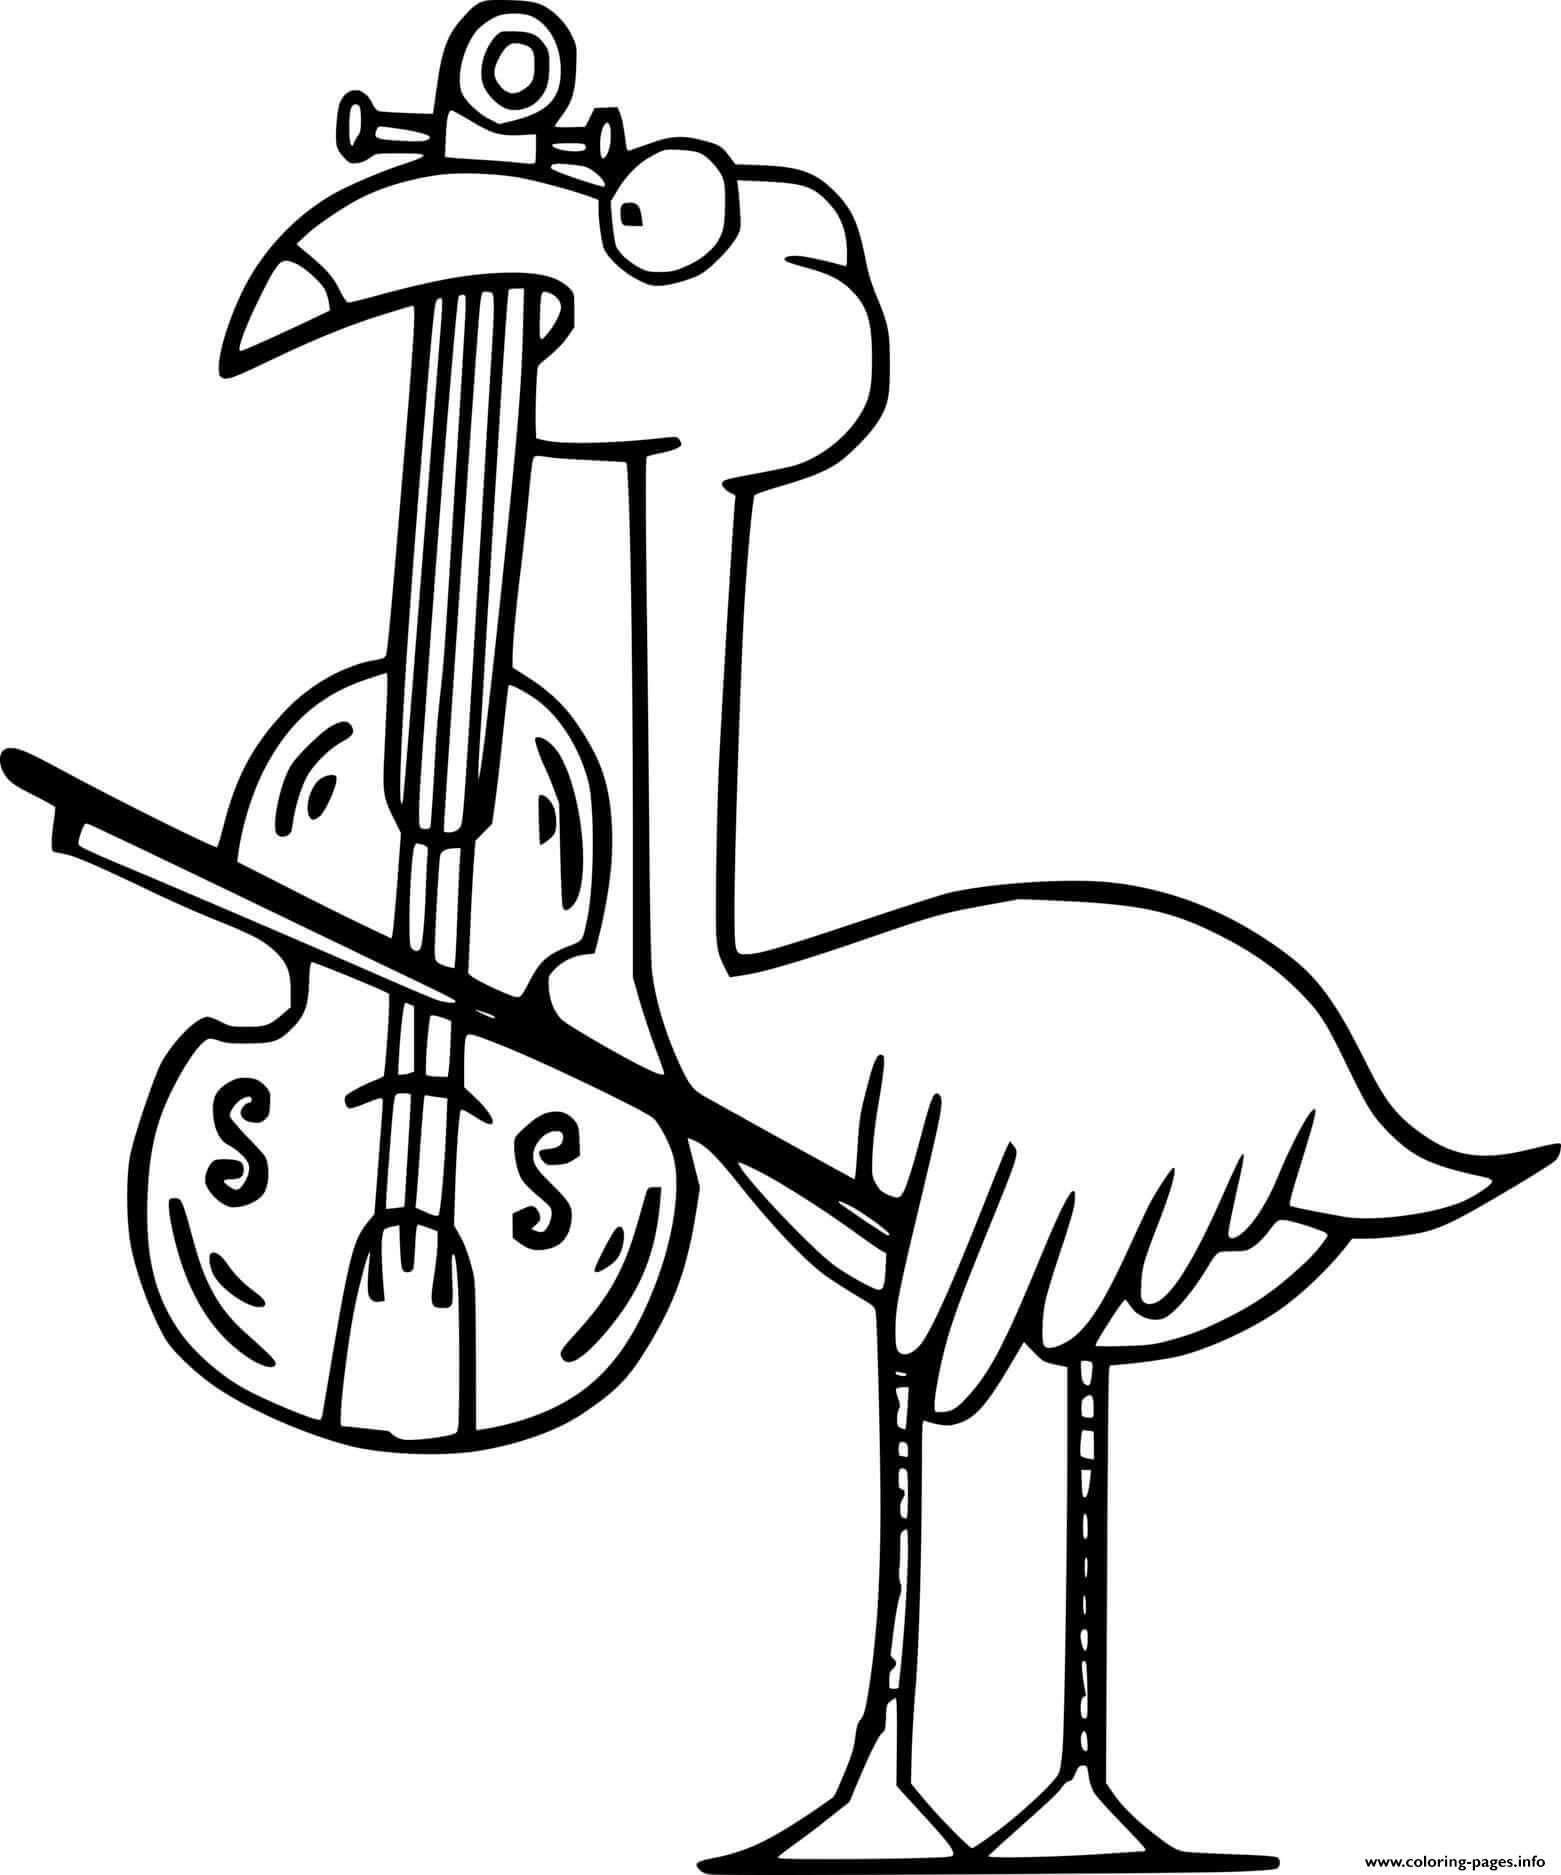 Flamingo Playing Violin coloring